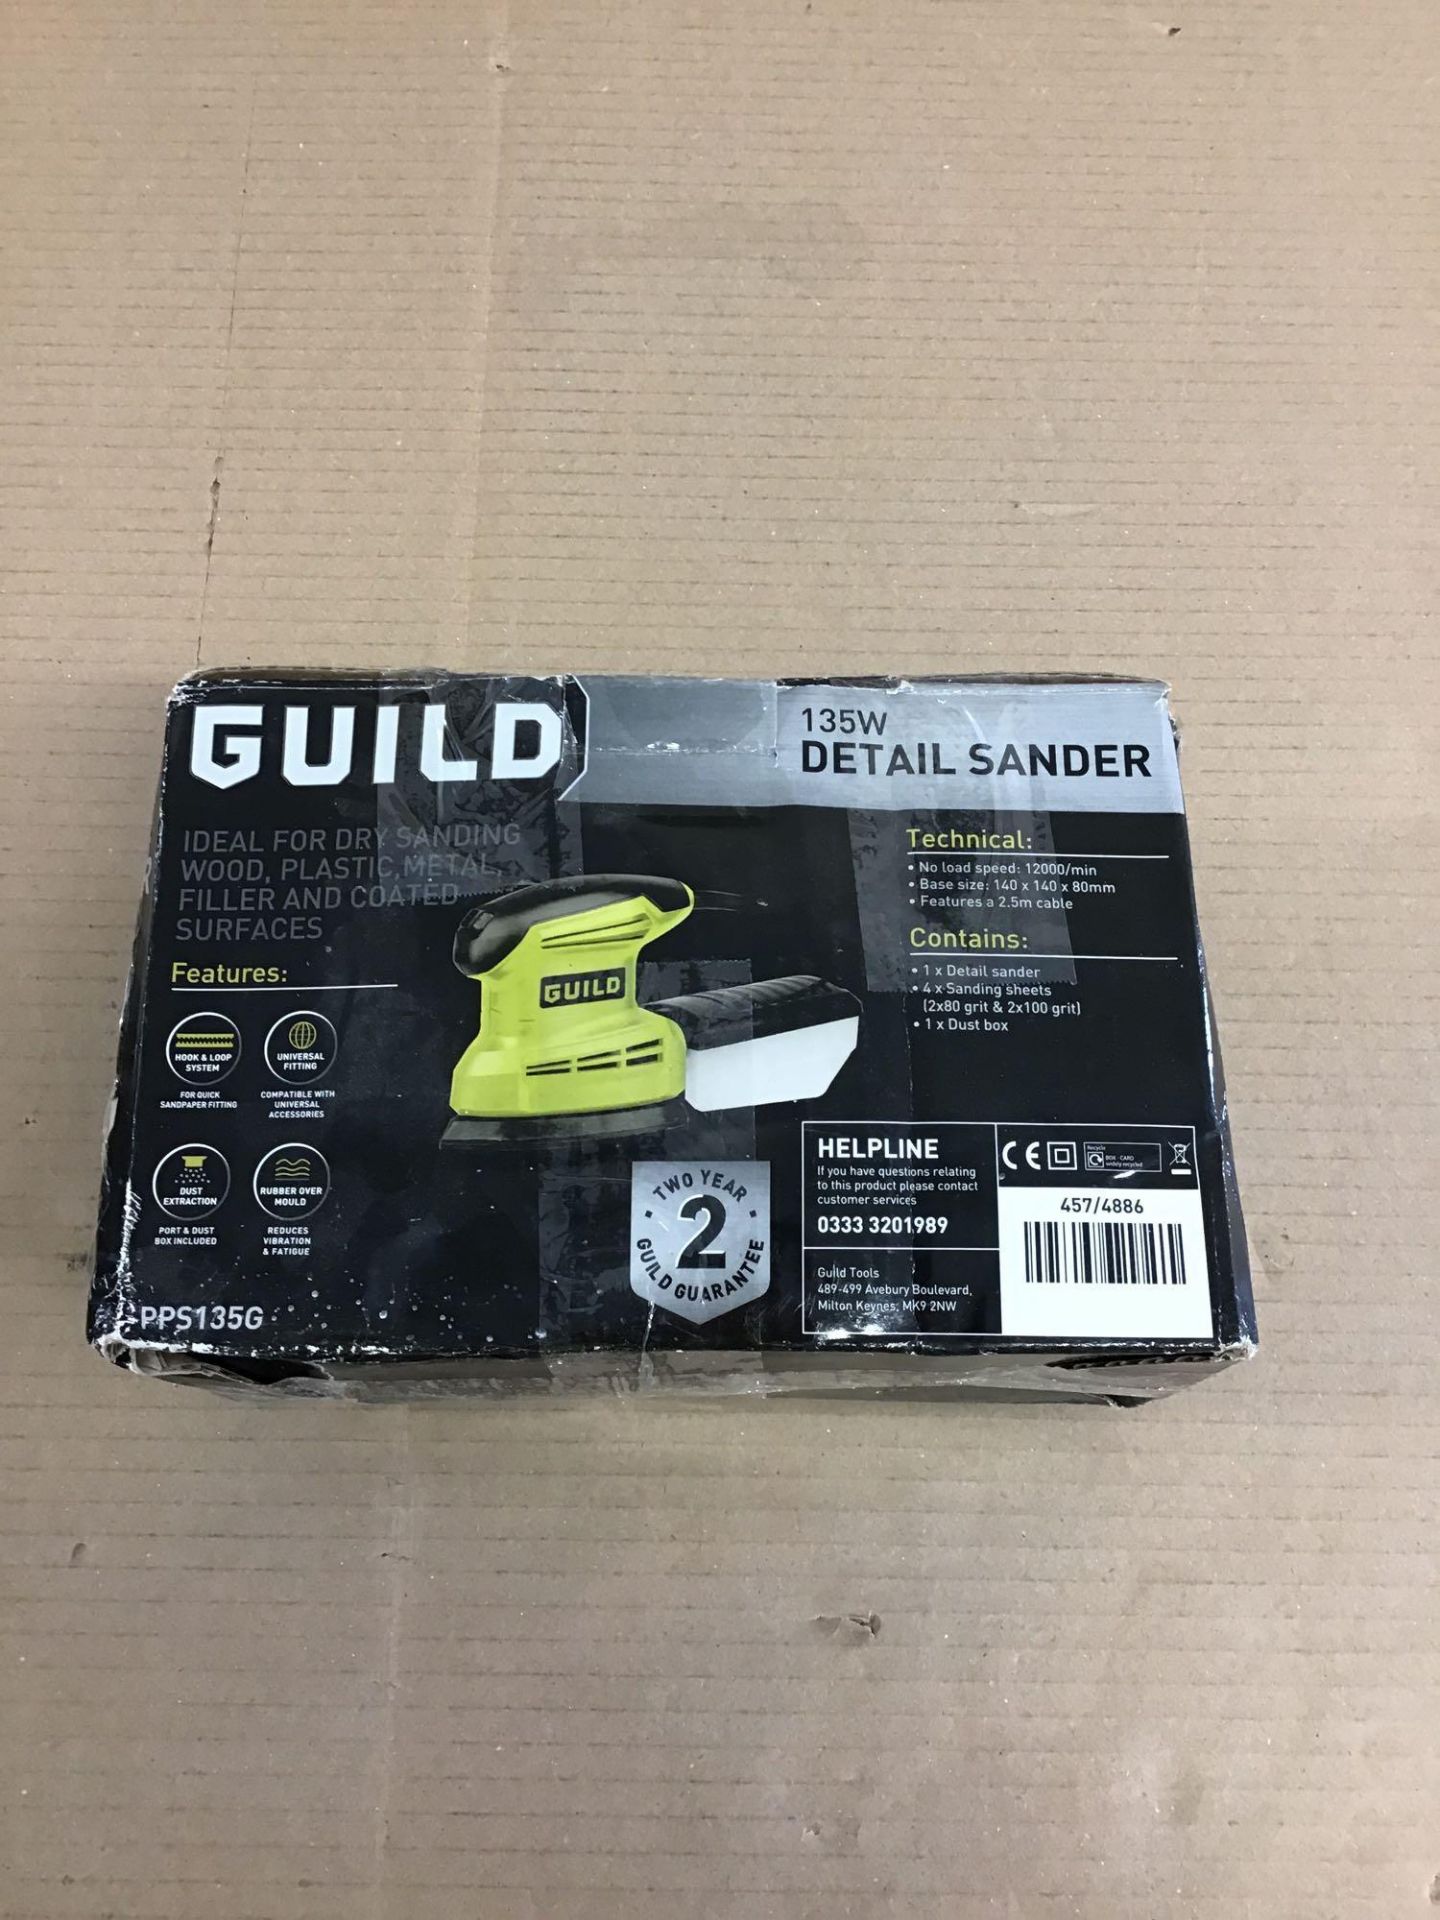 Guild Detail Sander - 135W 457/4886 £25.00 RRP - Image 3 of 5